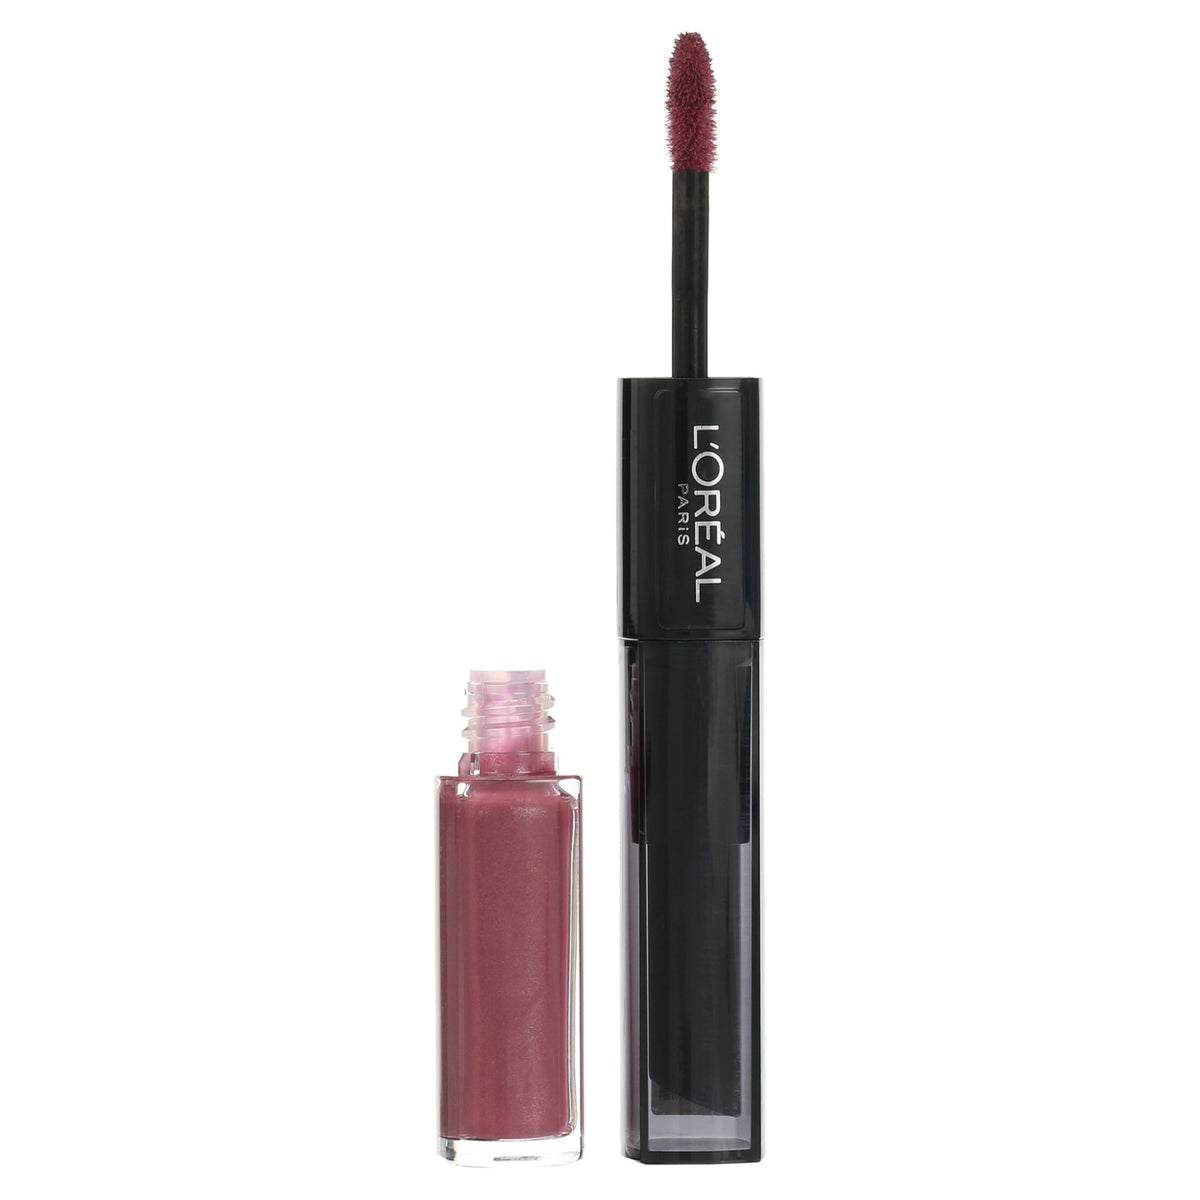 L'Oreal Paris Infallible Pro Last 2 Step Lipstick, Violet Parfait - Premium Lipstick from Doba - Just $27.59! Shop now at Ida Louise Boutique